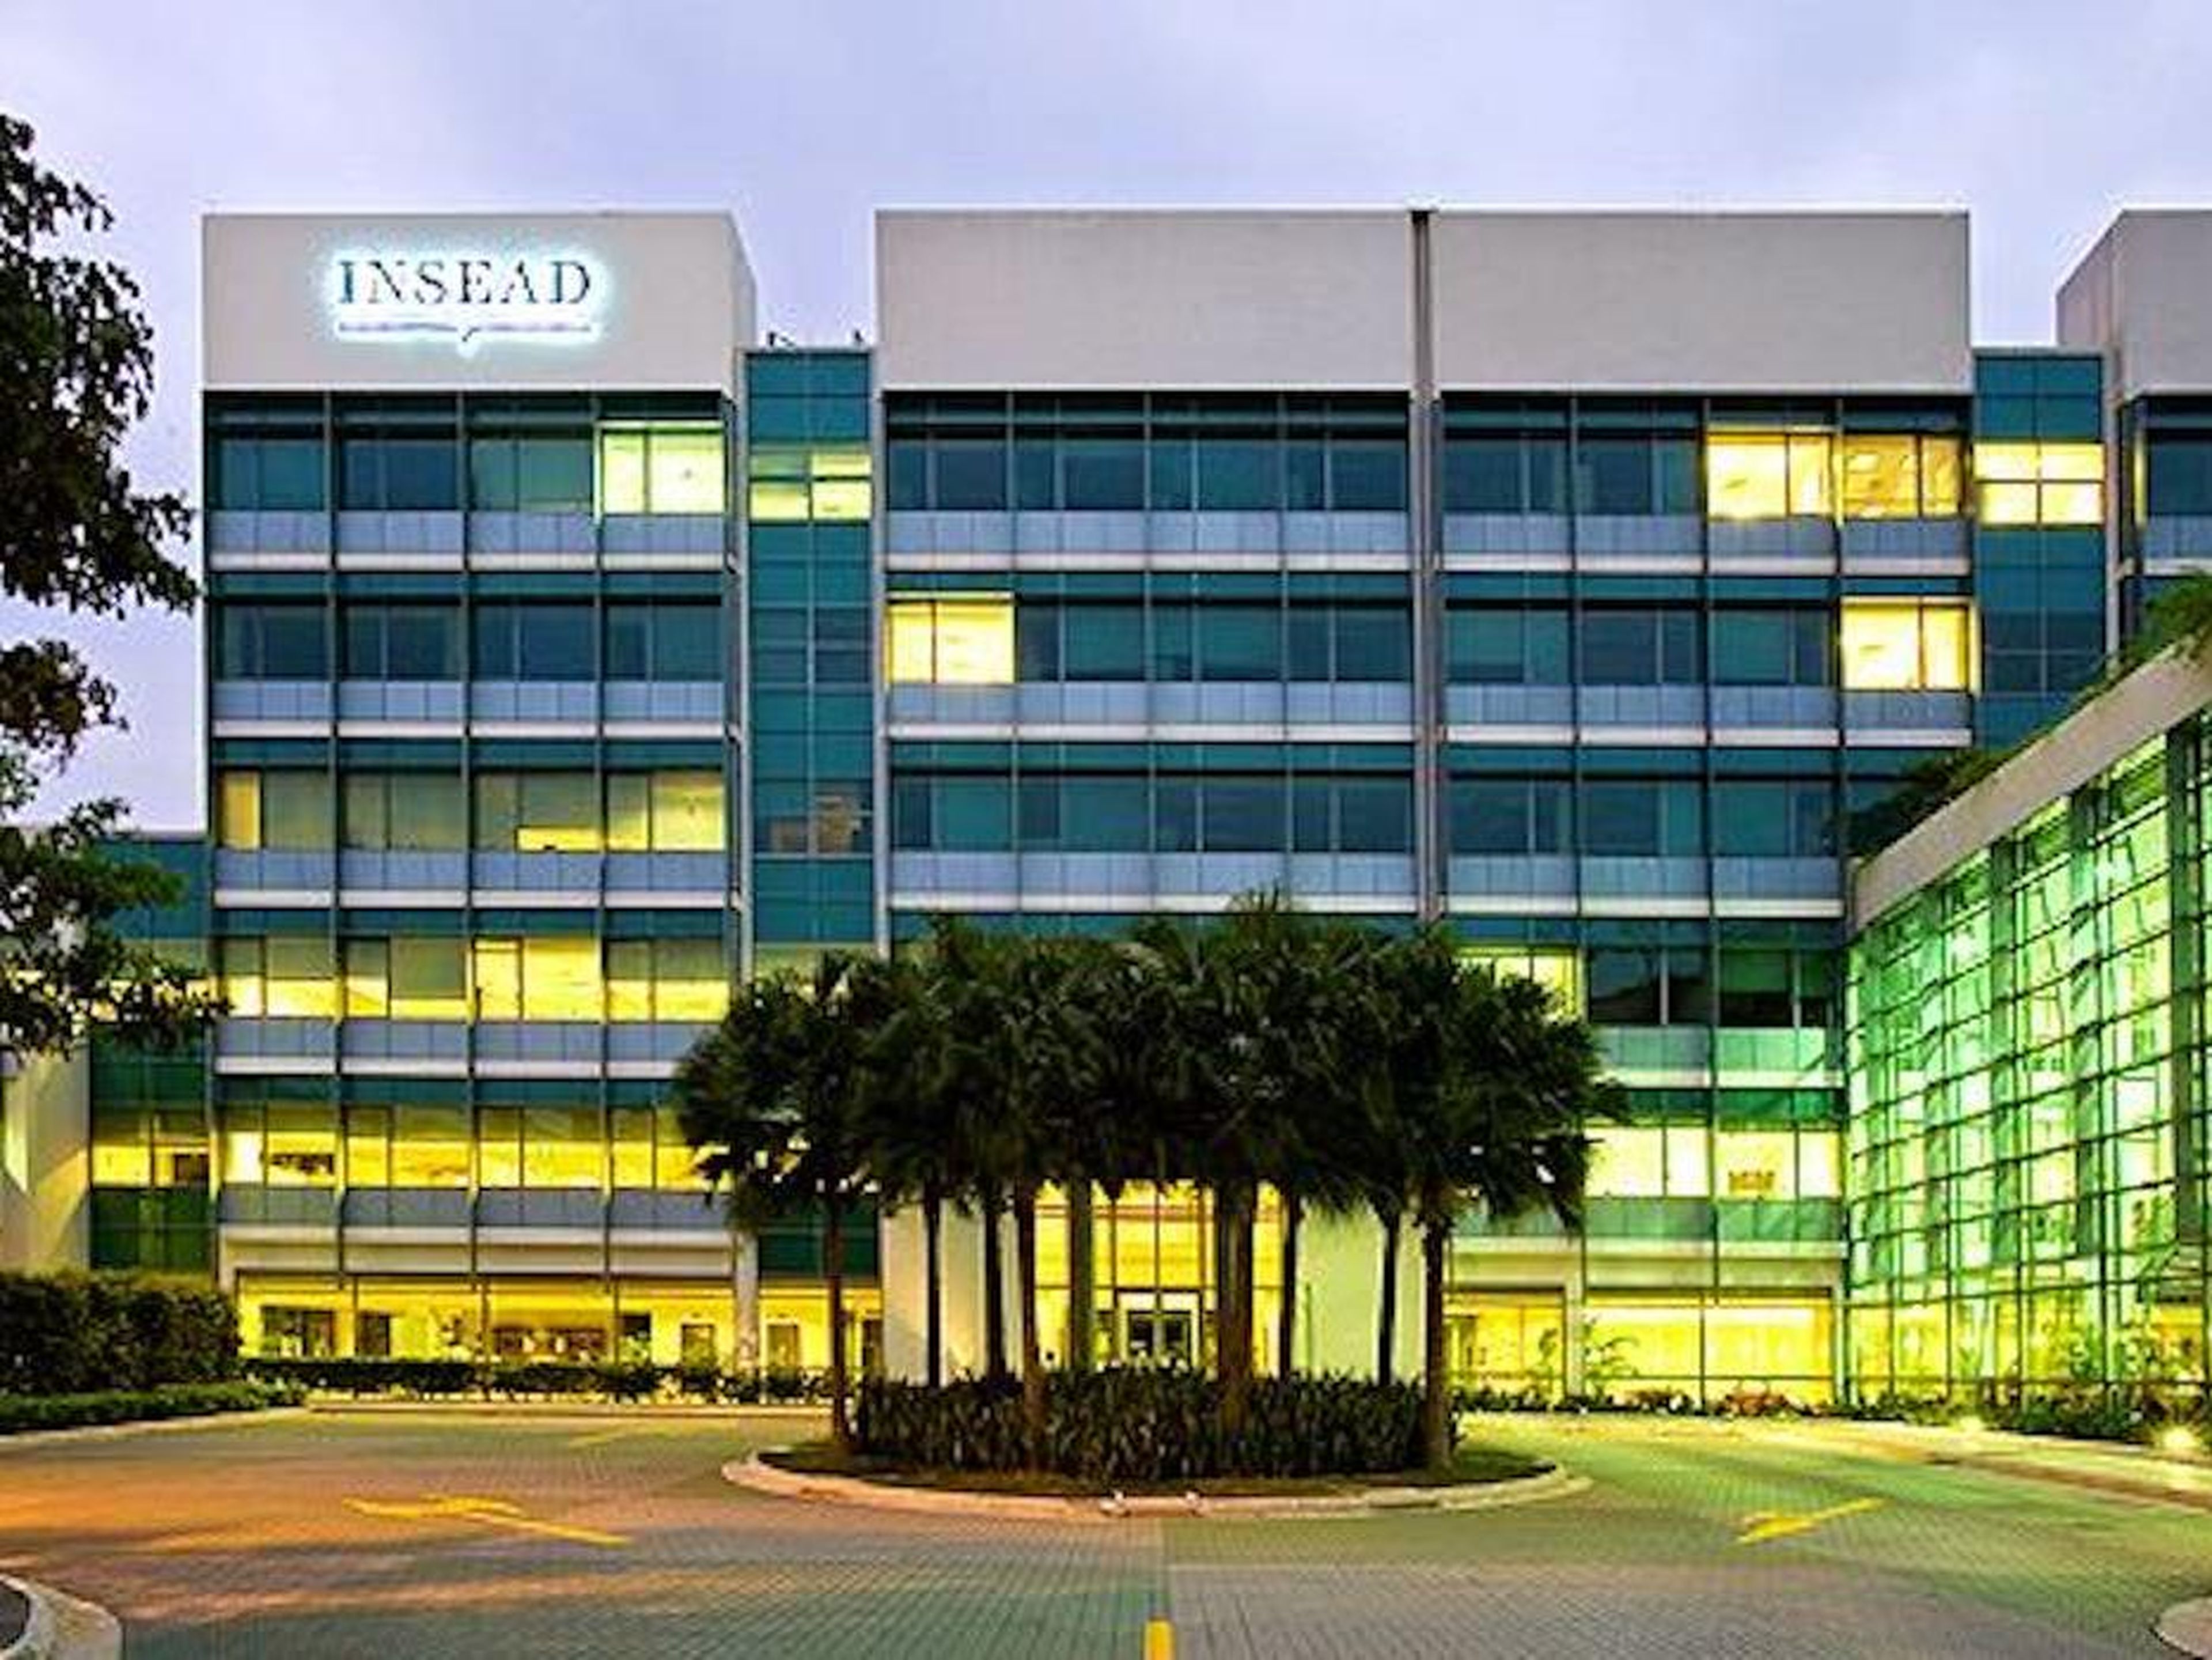 INSEAD's Singapore campus